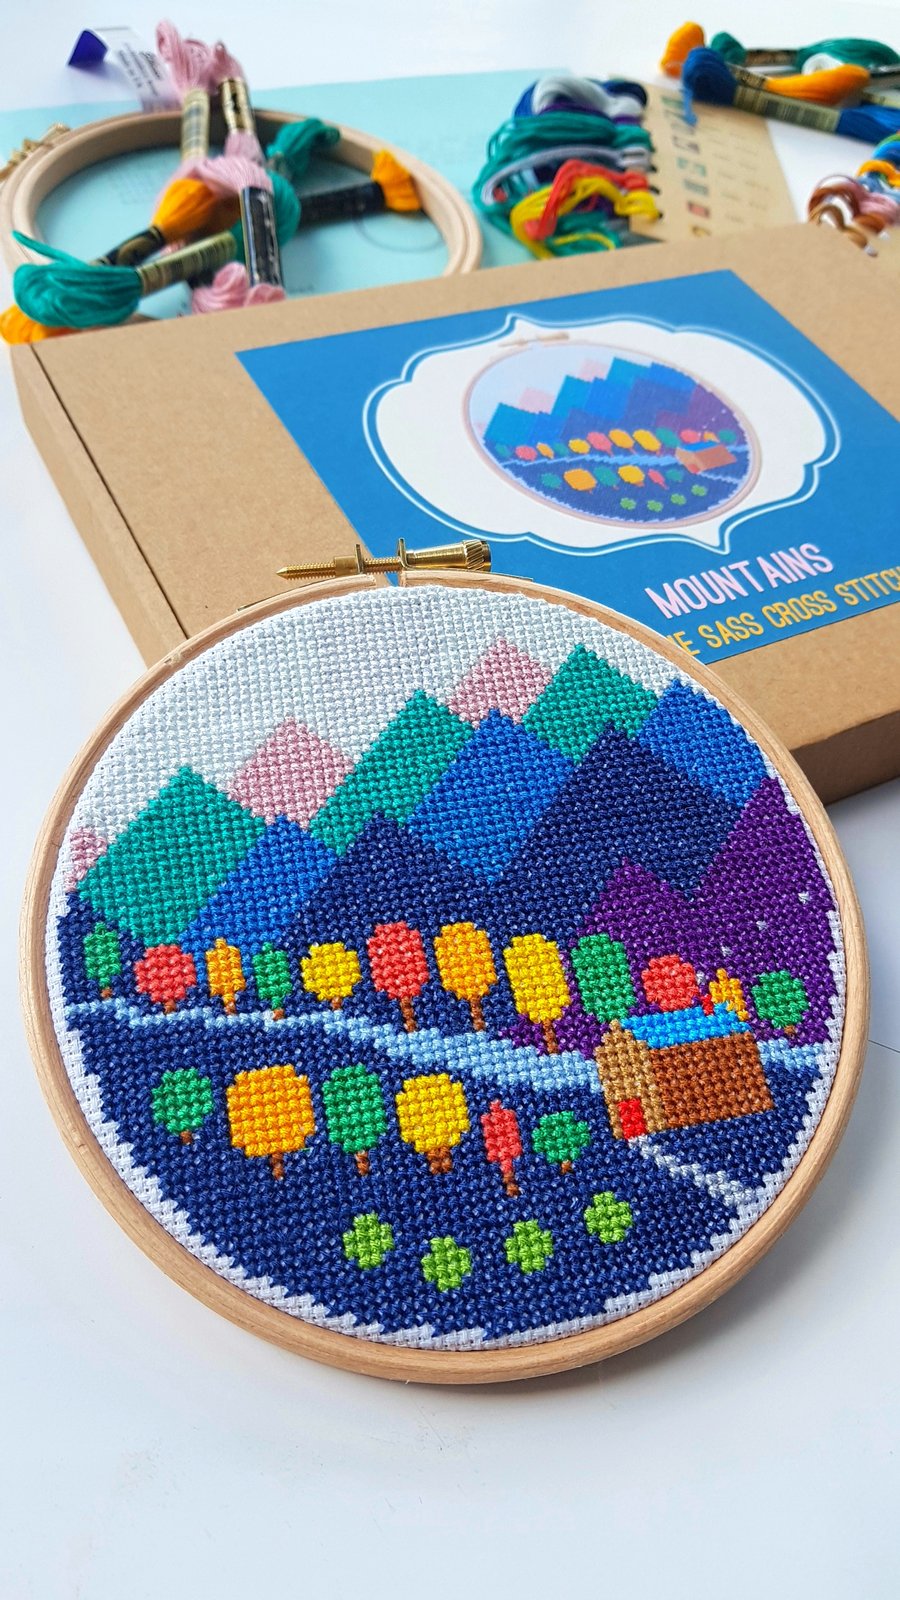 Mountains Cross Stitch Kit